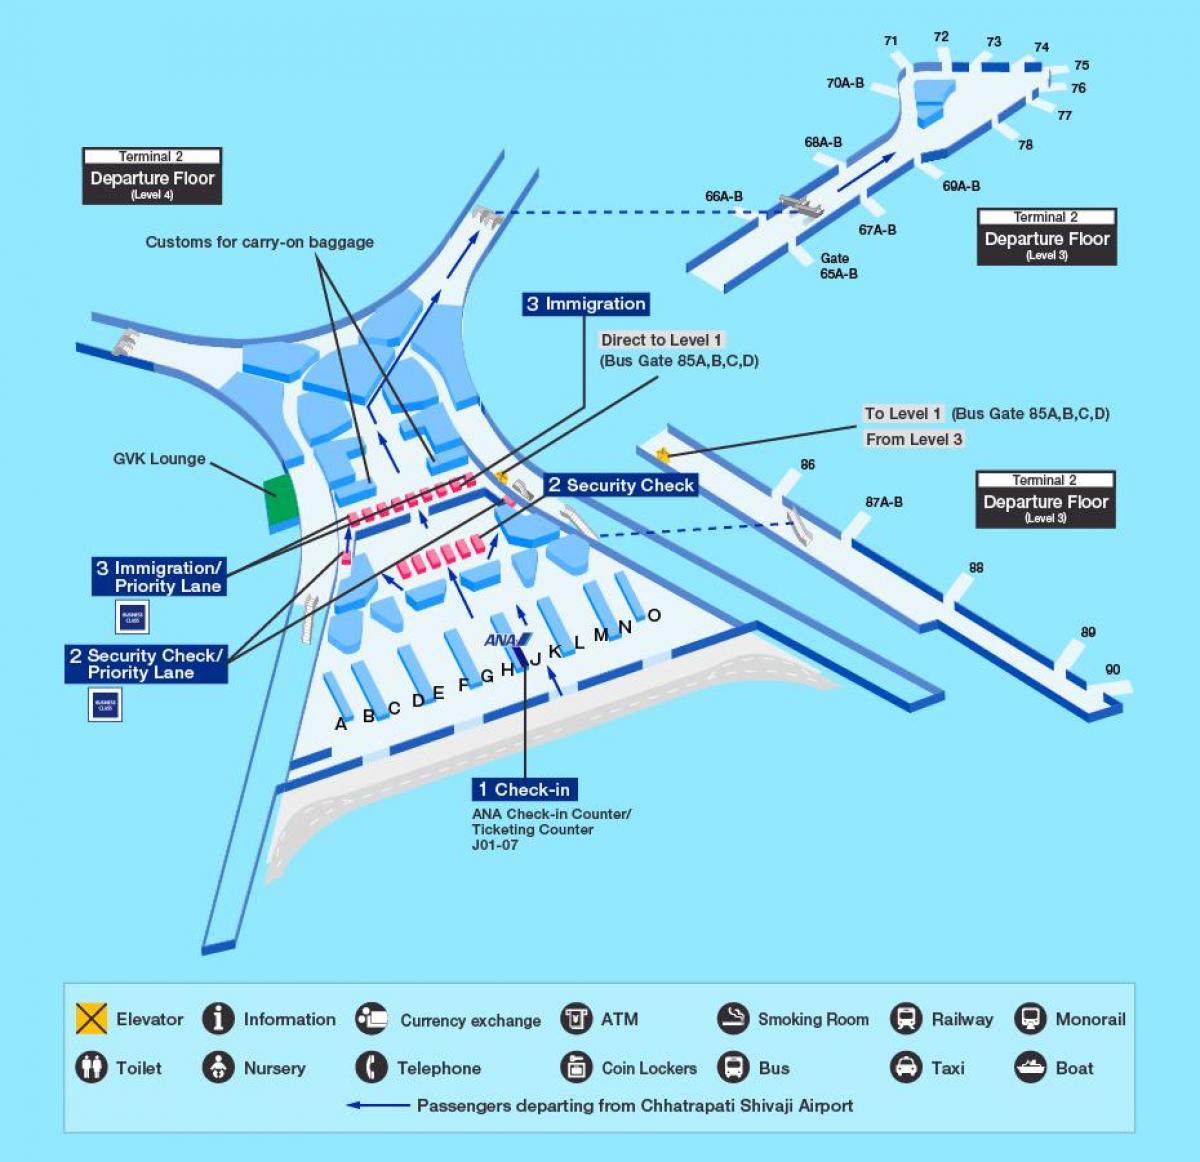 Mumbai alþjóðlegur flugvöllur terminal 2 kort